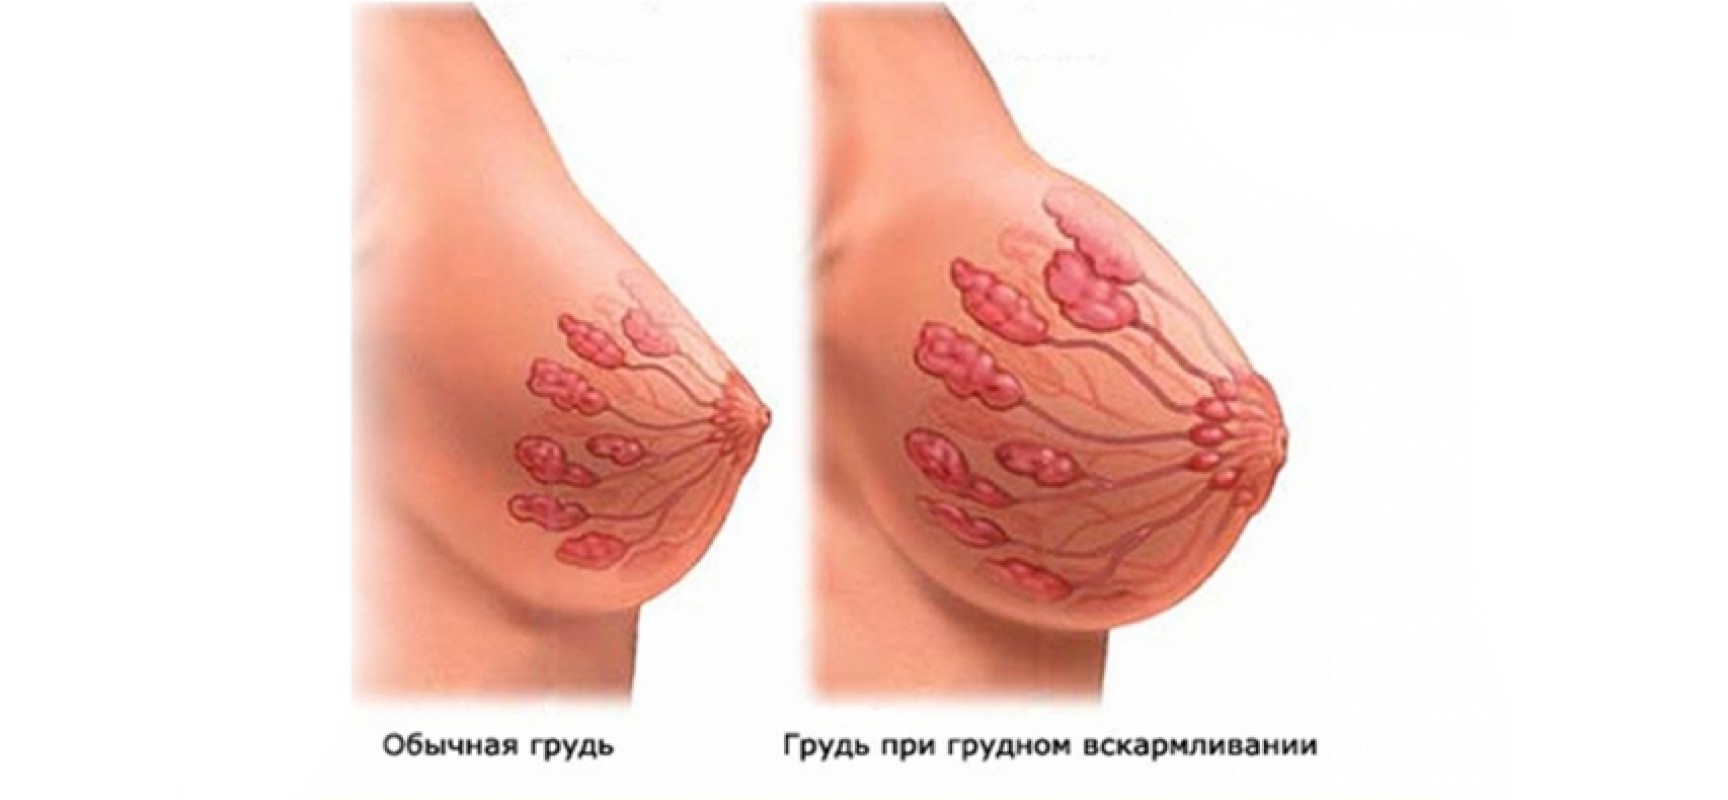 беременности цвет груди (120) фото